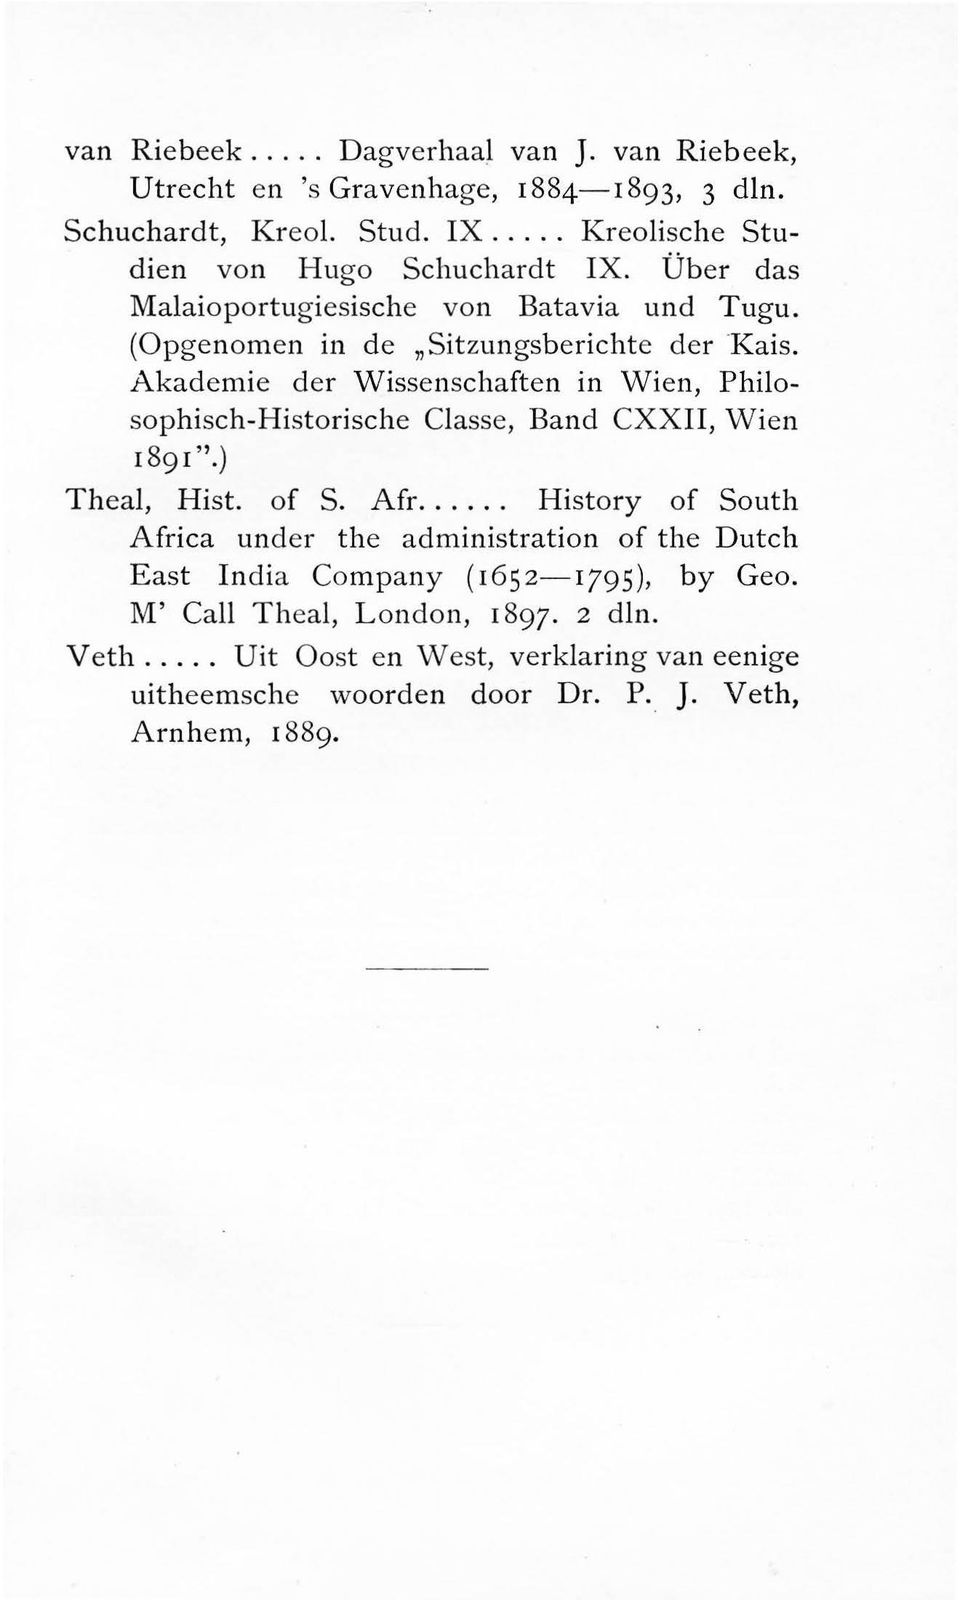 Akademie der Wissenschaften in Wien, Philosophisch-Historische Classe, Band CXXII, Wien 1891''.) Theal, Hist. of S. Afr.